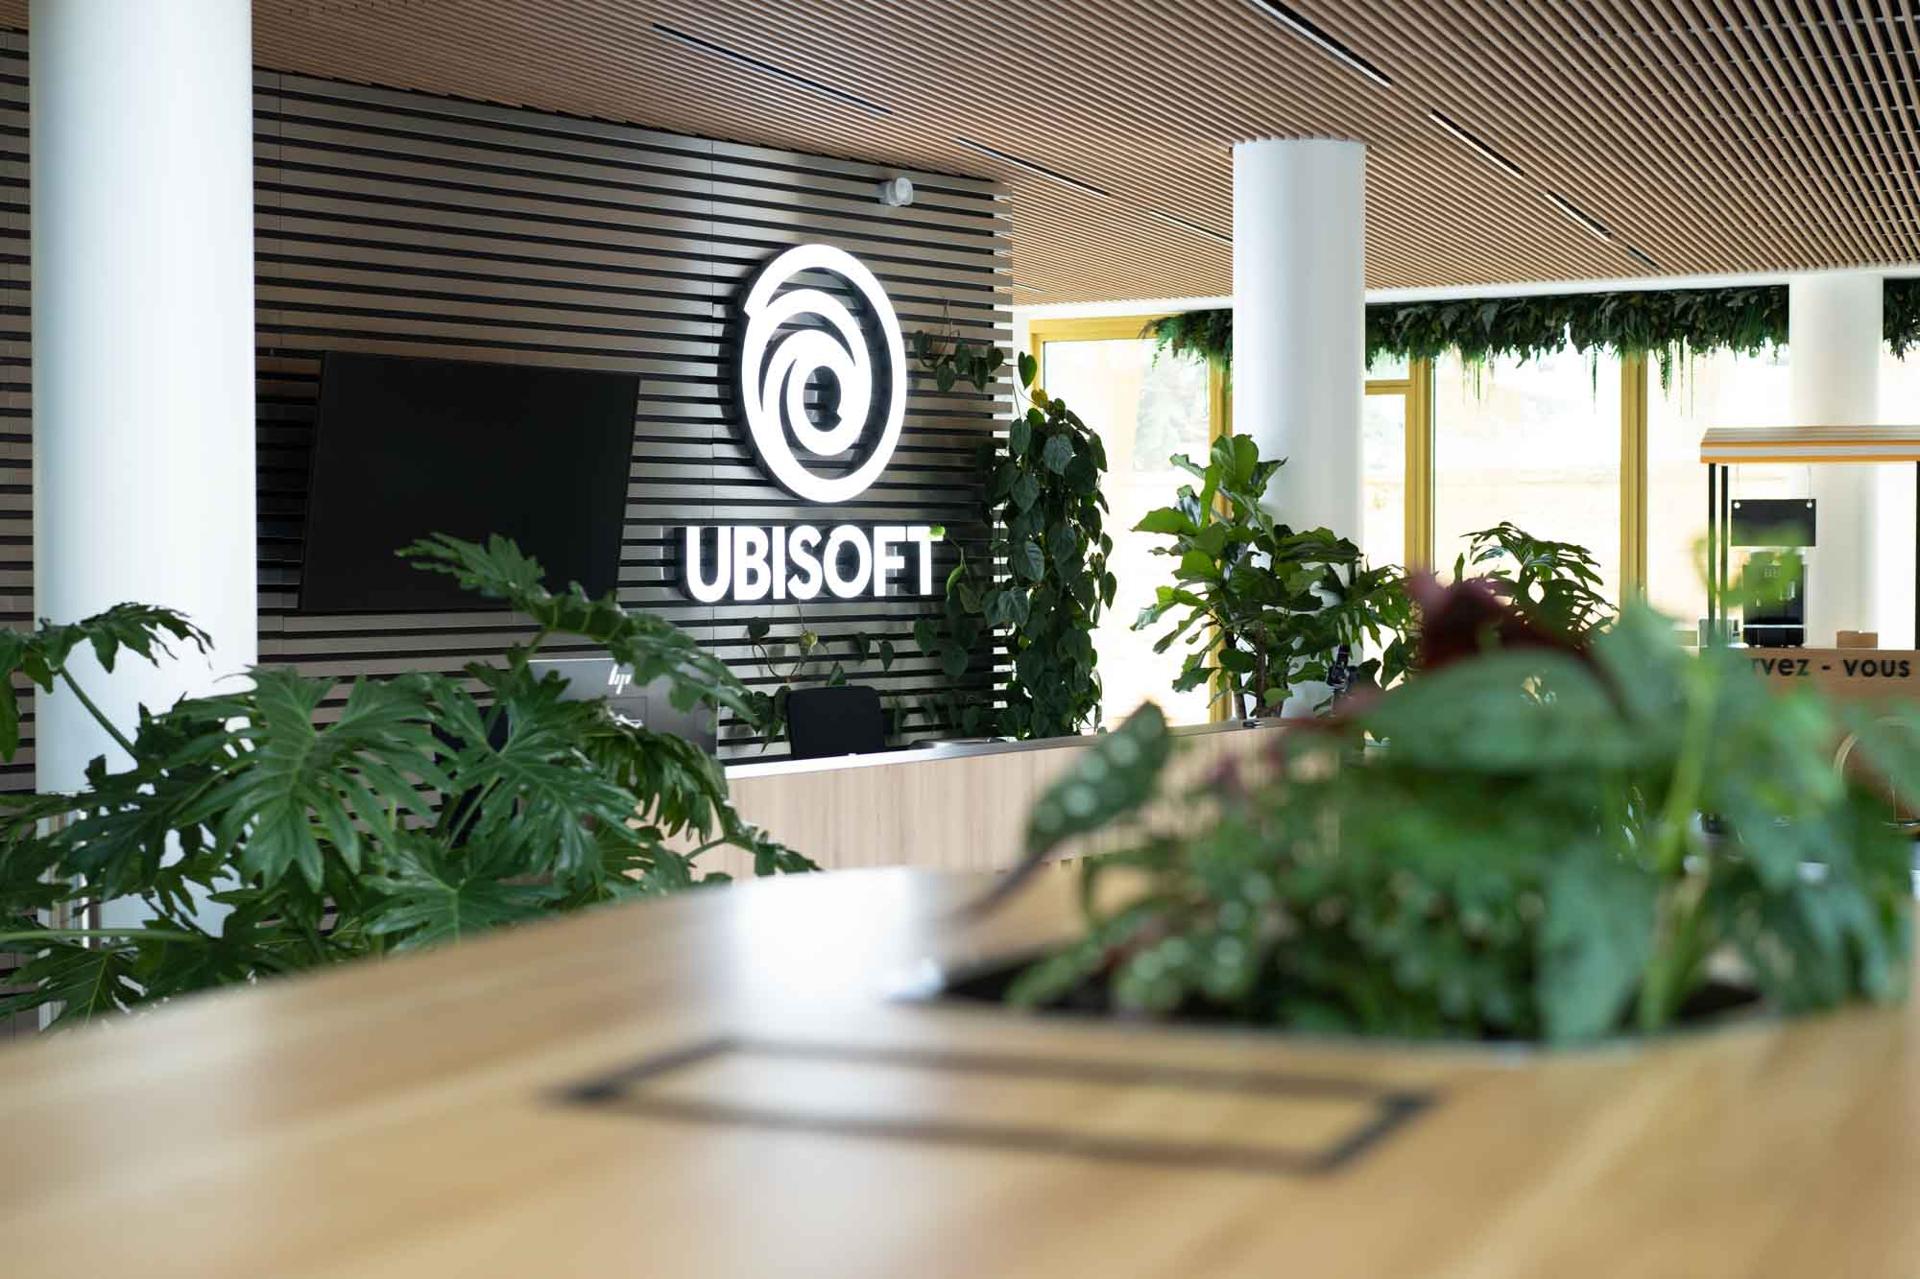 Agencement du siège social UBISOFT et création de bureaux créatifs et fonctionnels répondant aux besoins de l'entreprise. De nombreux espaces de travail, des bornes d'accueil, des estrades ou encore des bibliothèques sur-mesure. 